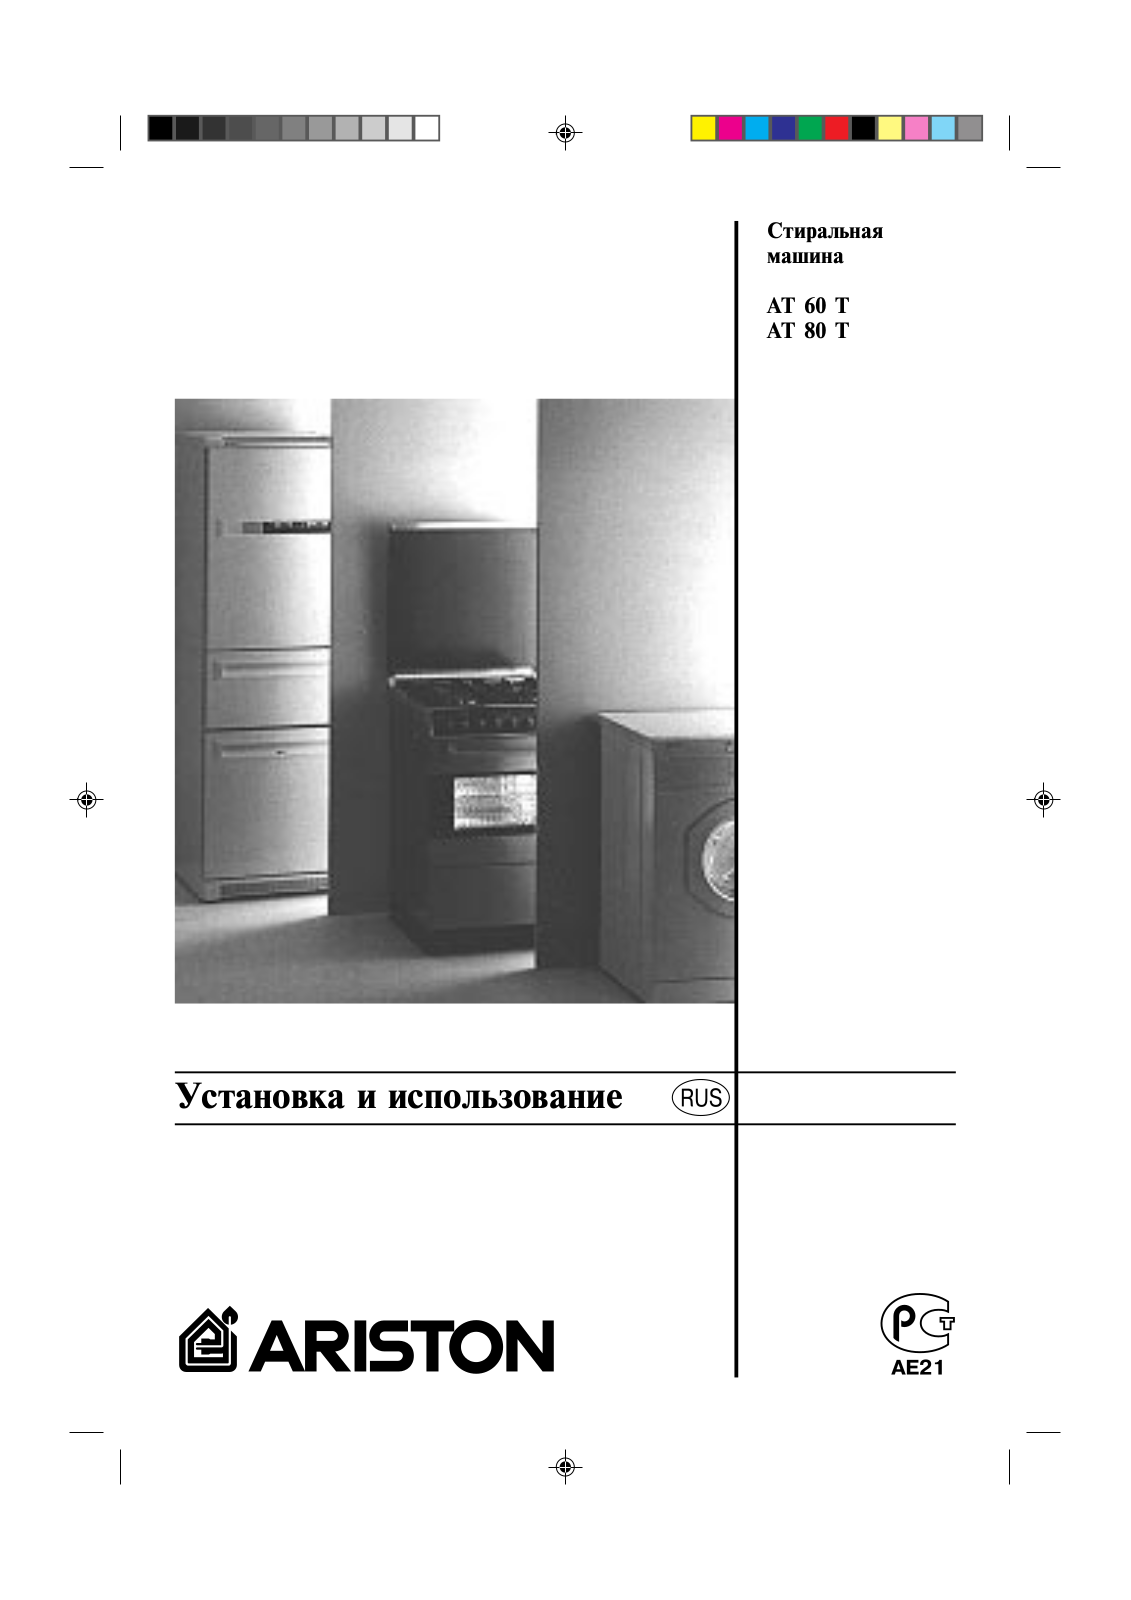 Ariston AT 80 T, AT 60 T User Manual